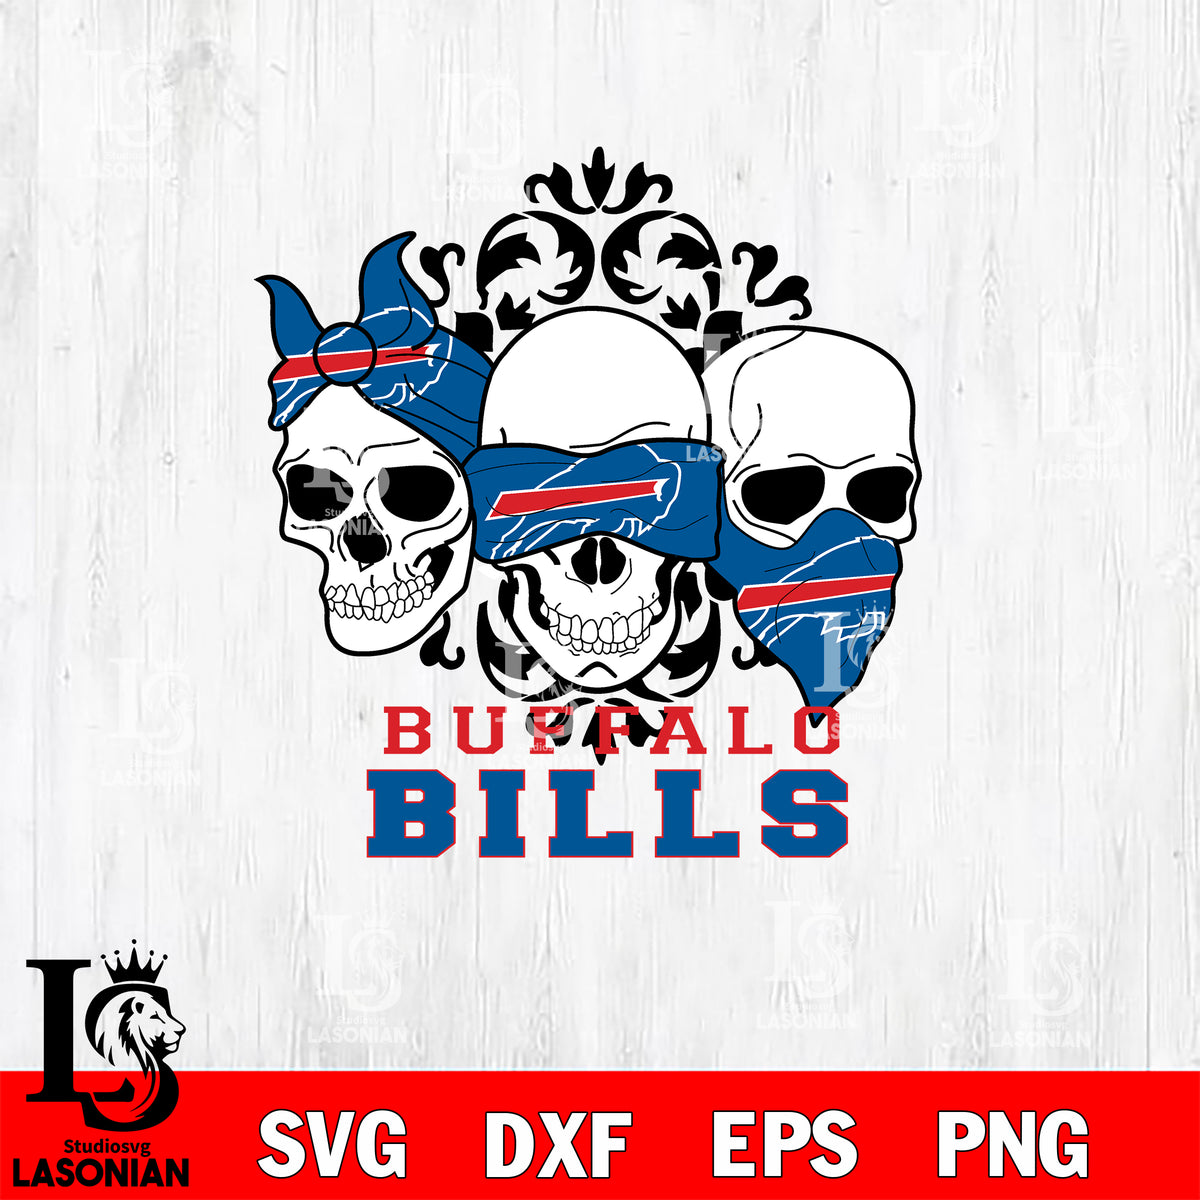 Buffalo Bills svg eps dxf png file, digital download , Instant